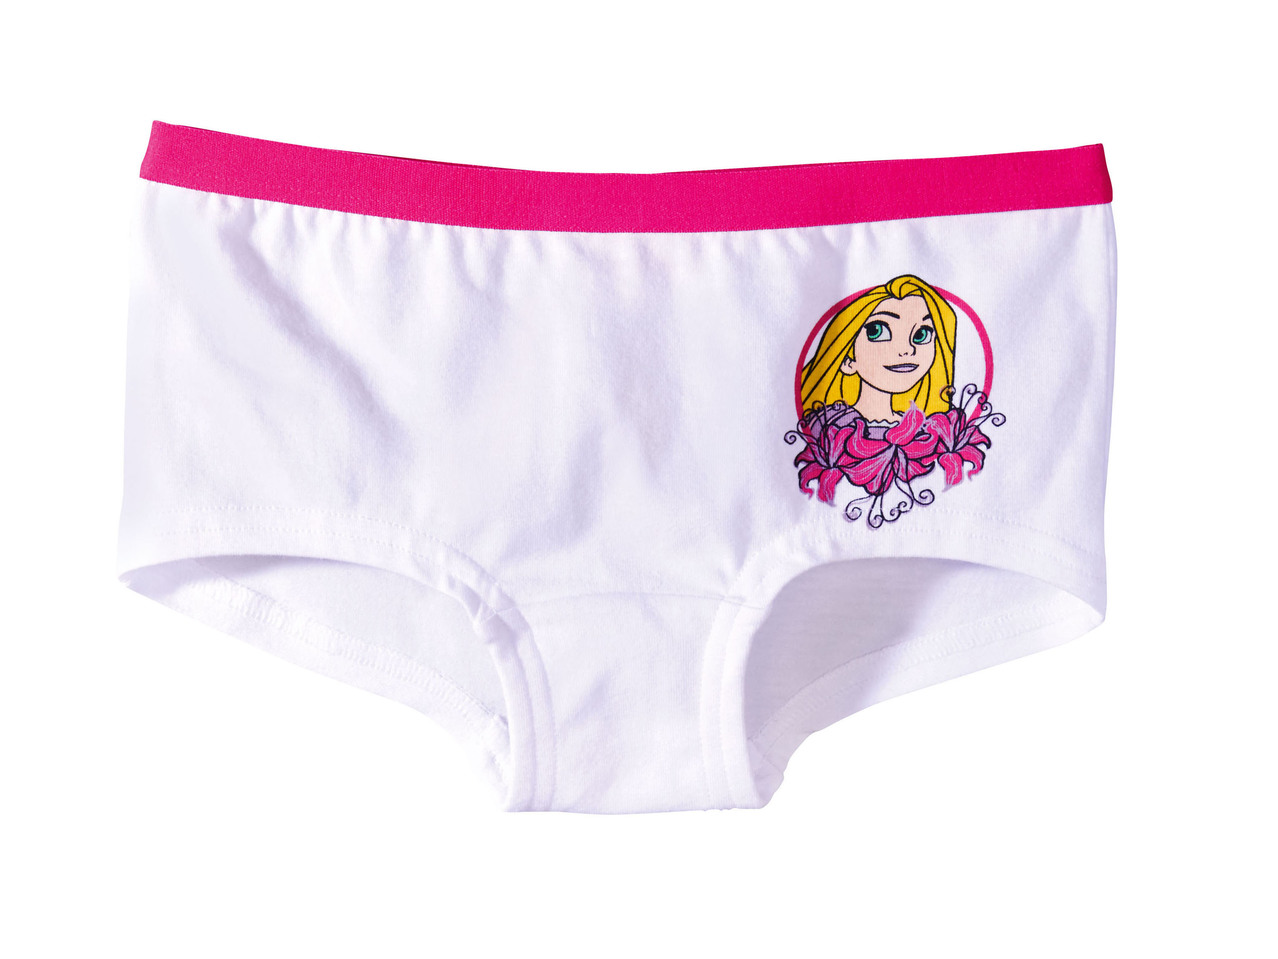 Girls' Underwear Set "Frozen, Princess, My Little Pony"